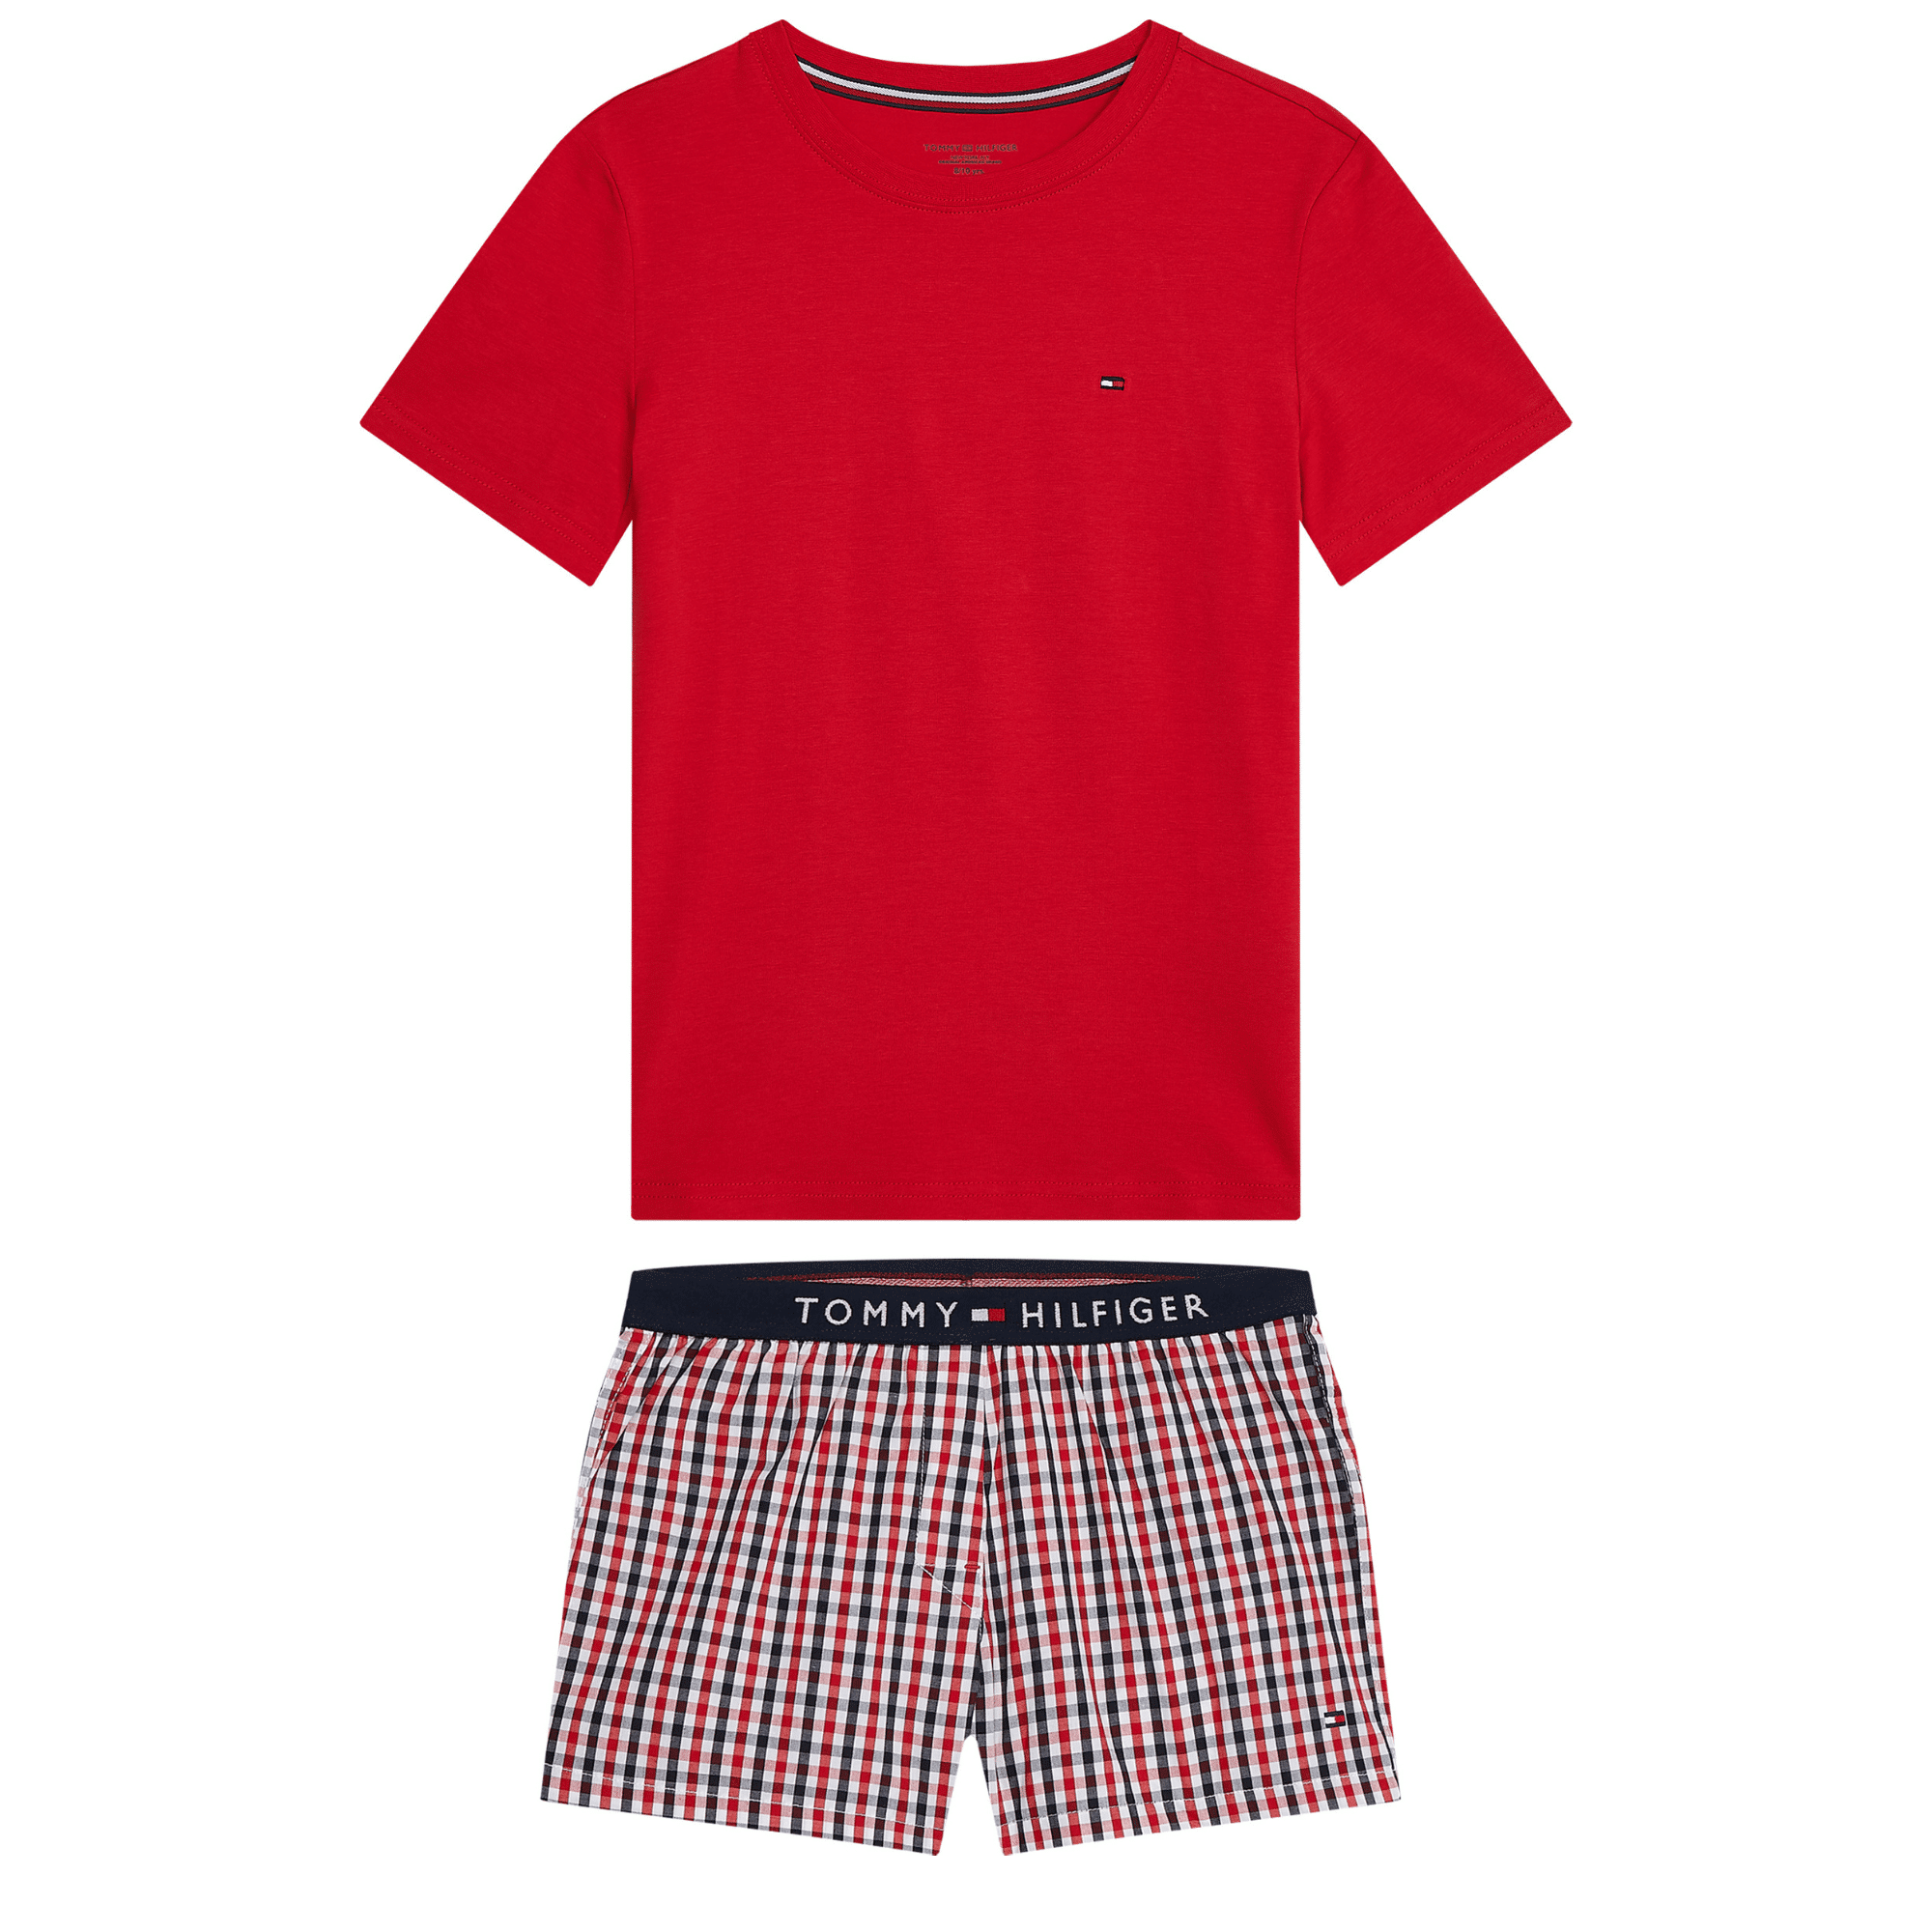 Tommy Hilfiger Sleeve Gingham Pyjama Set - Life Clothing - Children's designer